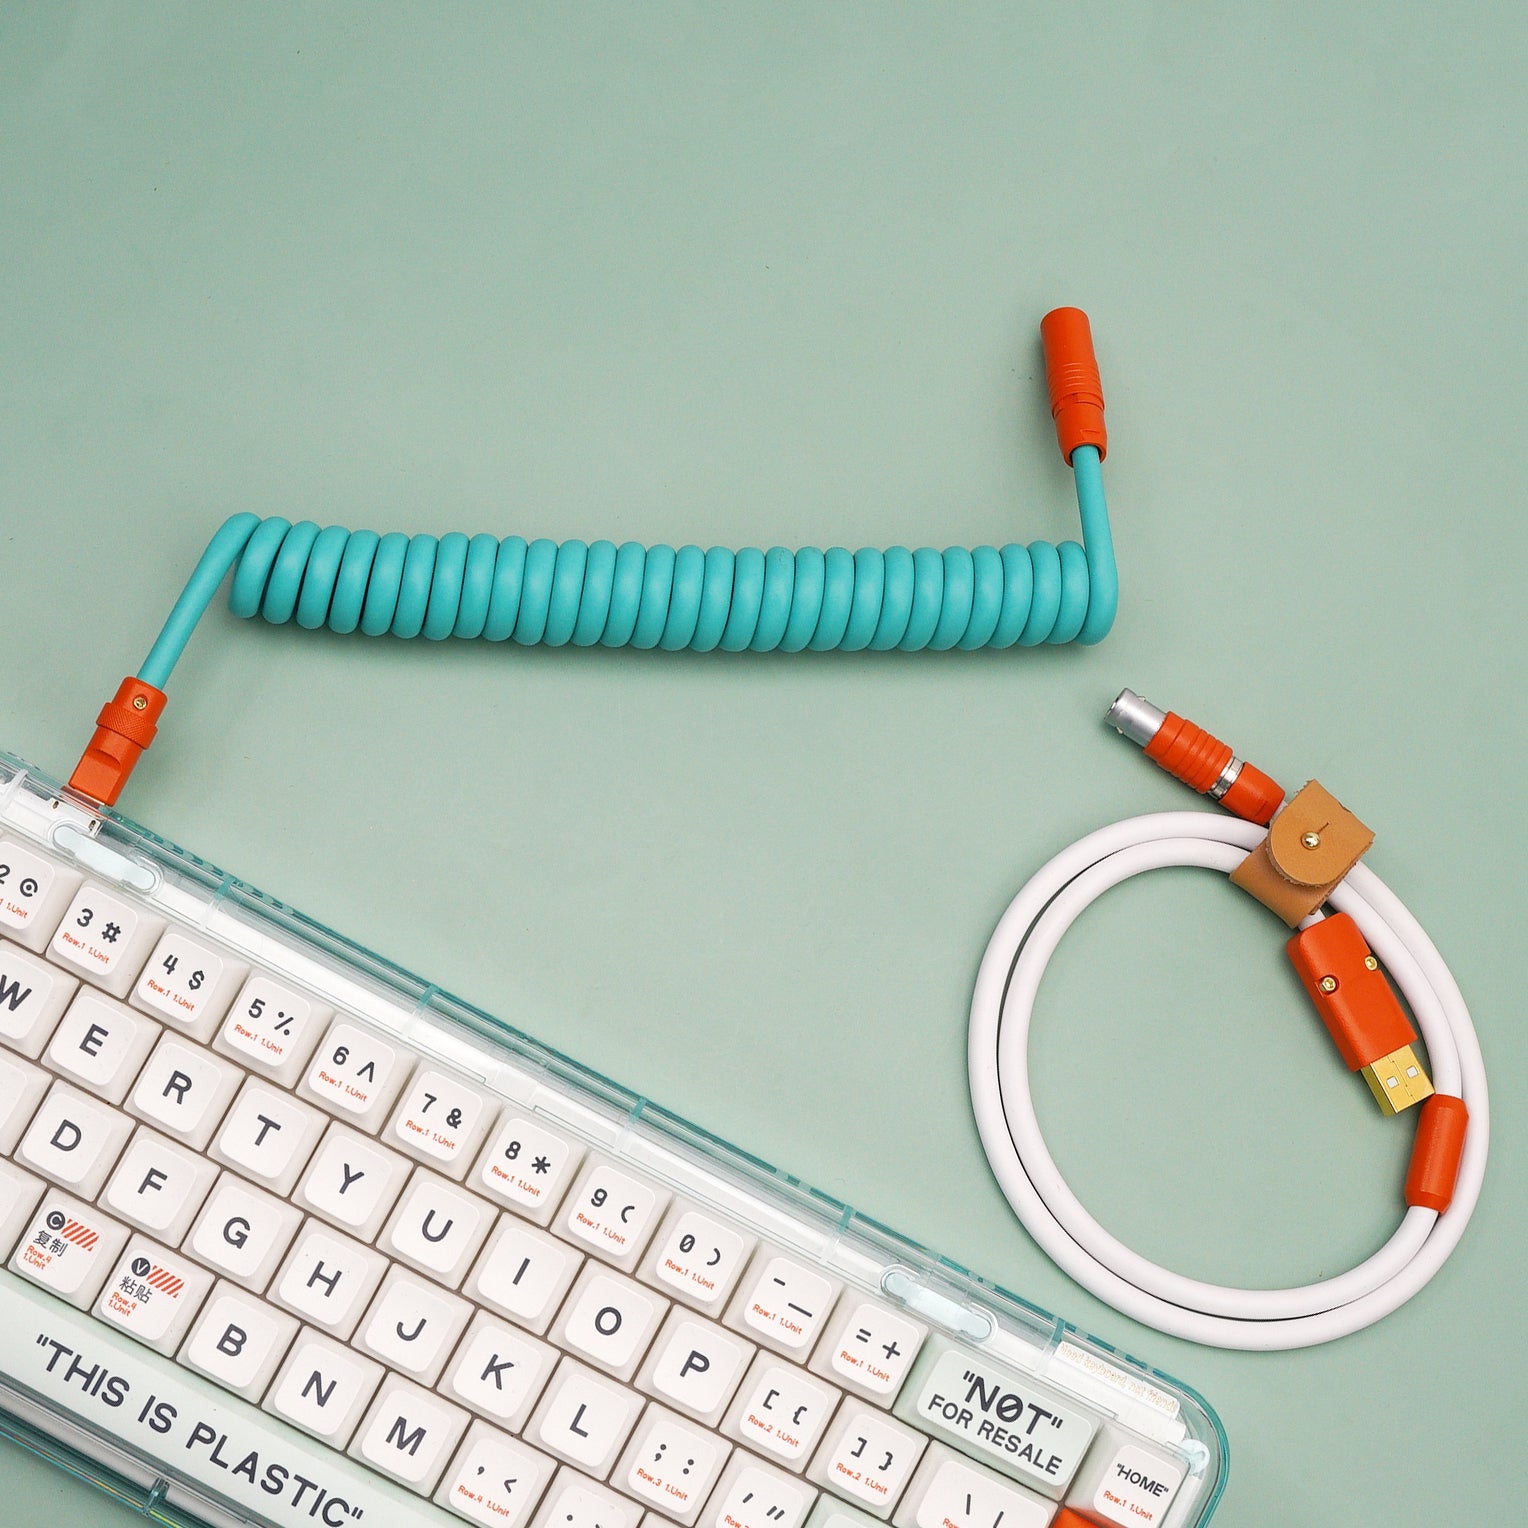 MelGeek カスタマイズ TPU ラバー コイル状 USB C ケーブル キーボード側にオレンジ色のアビエイター コイル付き